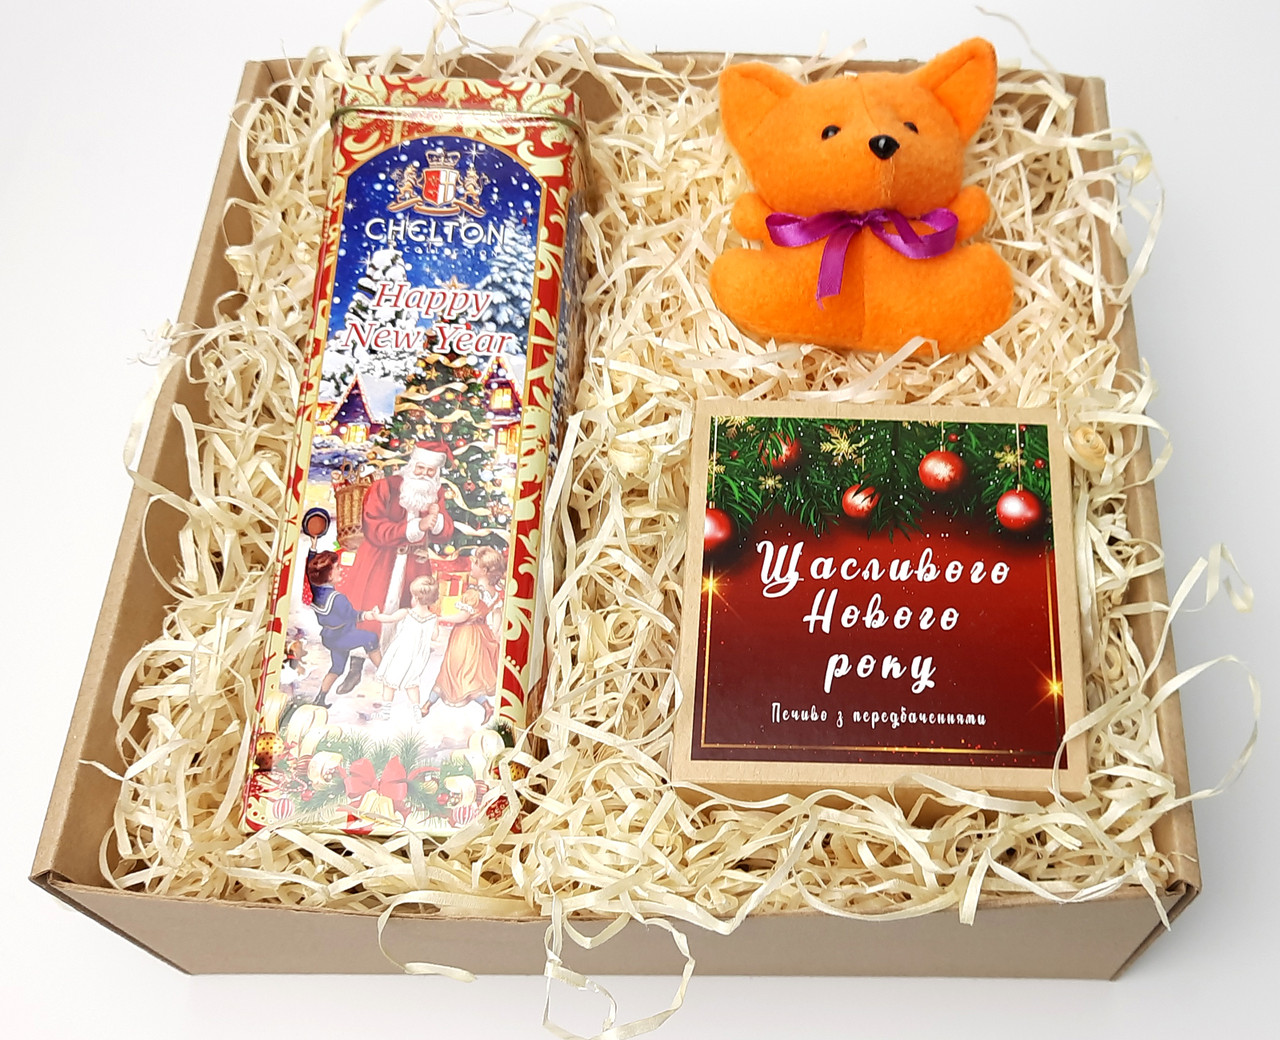 Бокс новорічний "Щастя приносить Лисеня": новорічне печиво з передбаченнями, набір чаю, лисеня-талісман